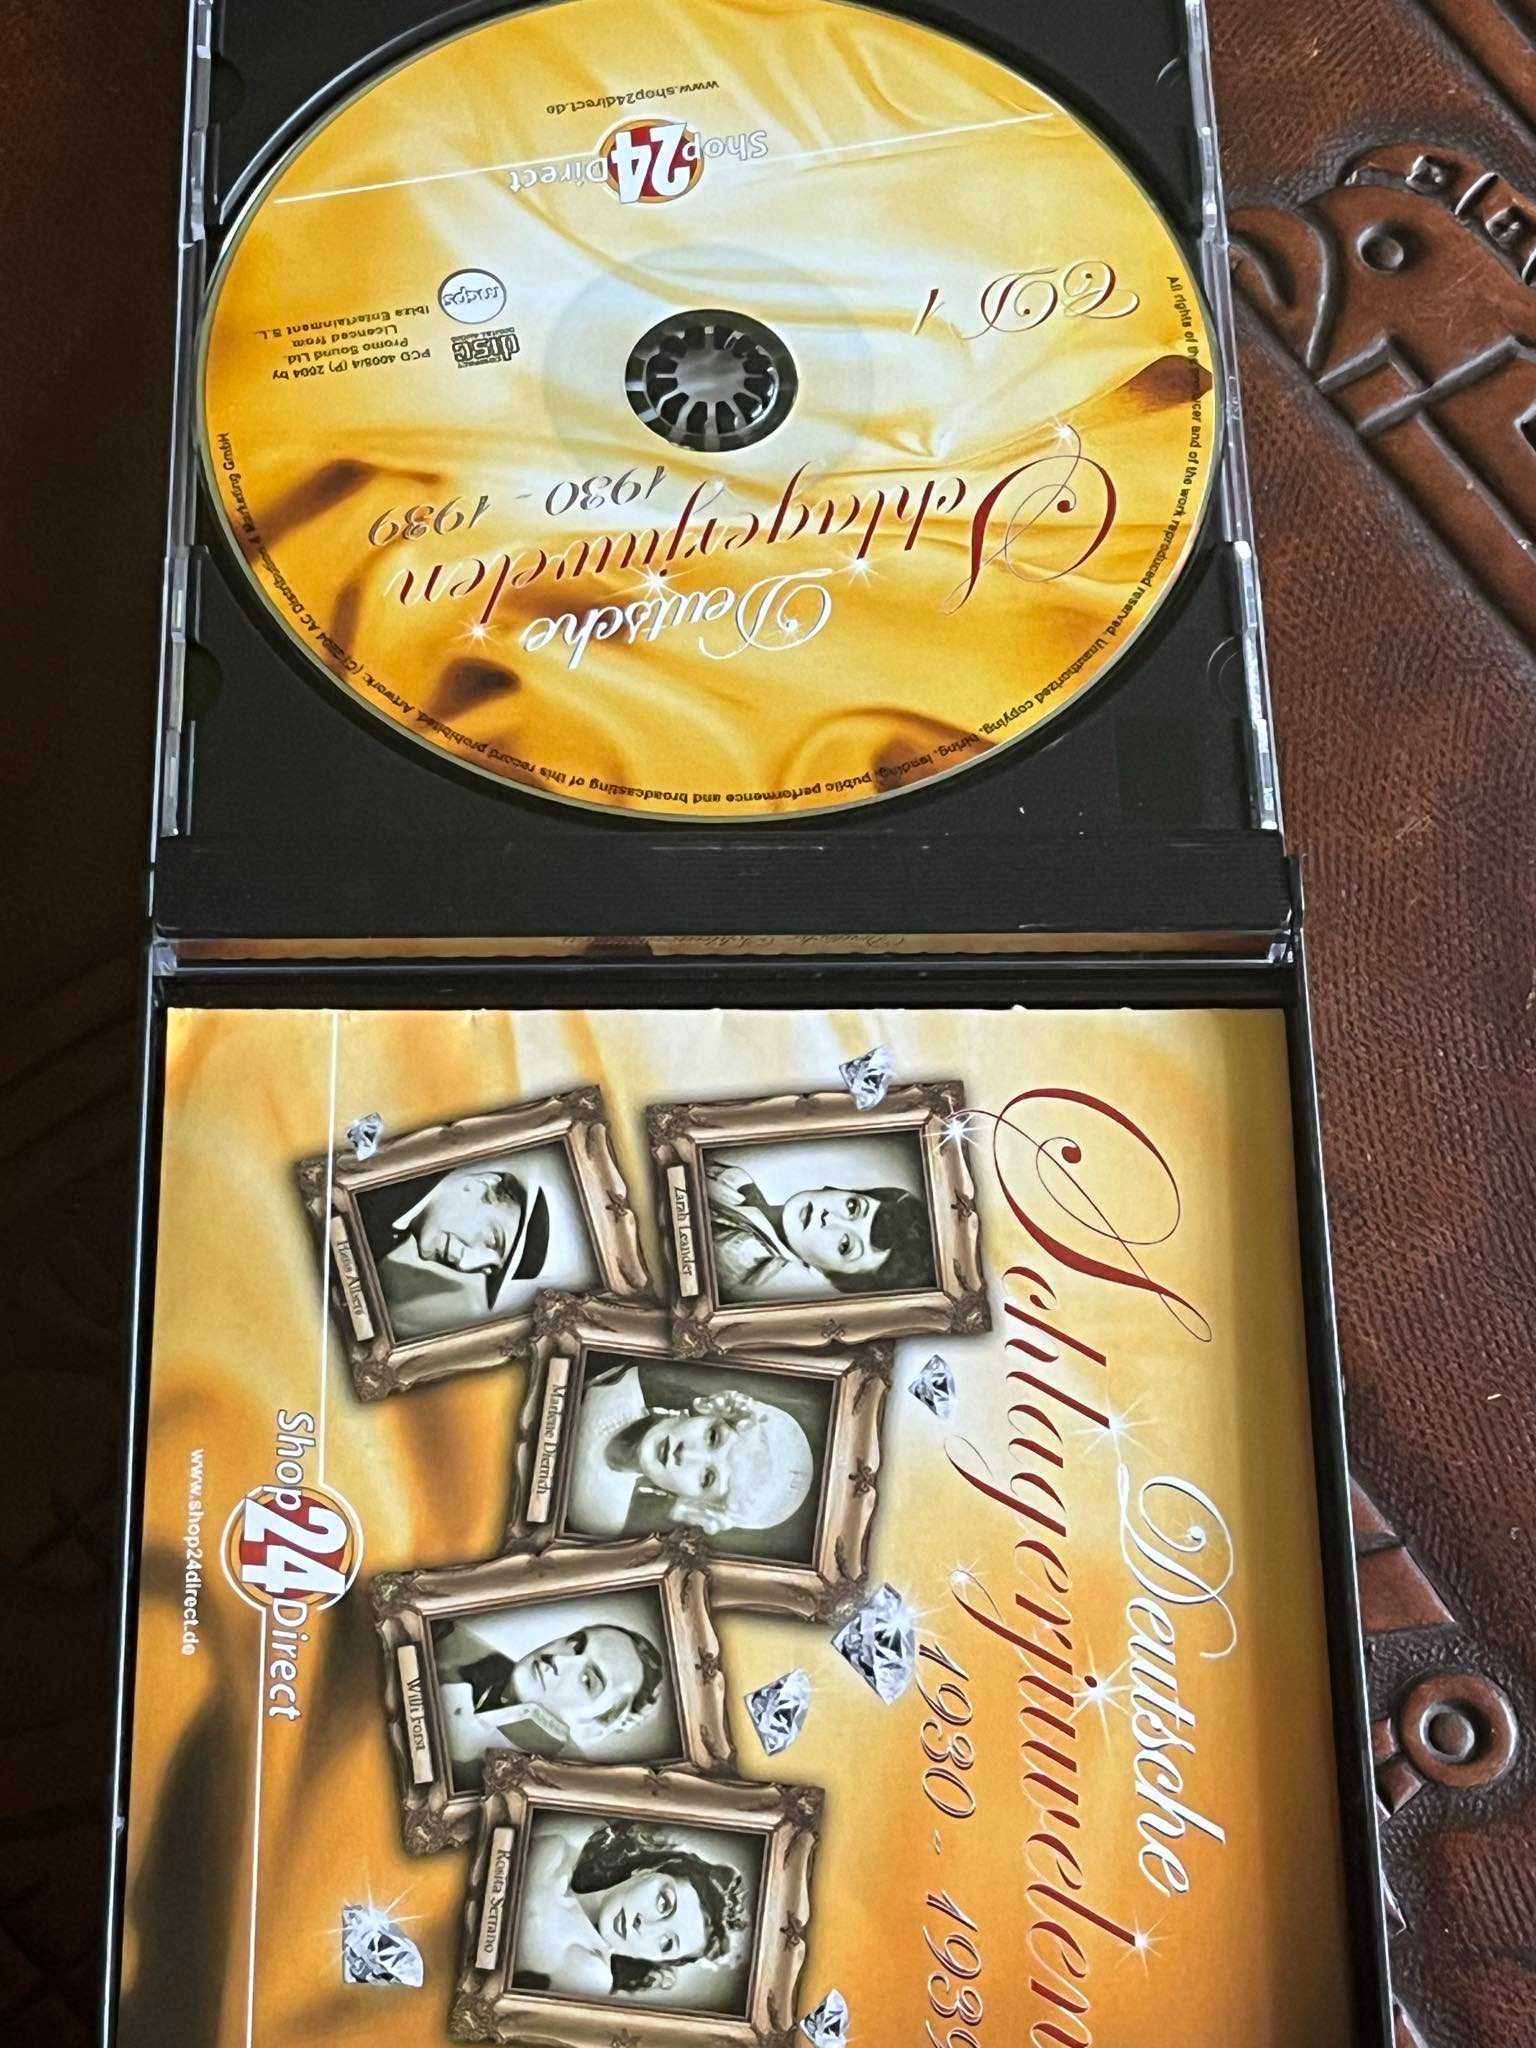 Deutsche Schlagerjuwelen 1930/1939- 4CD (rare) EX+